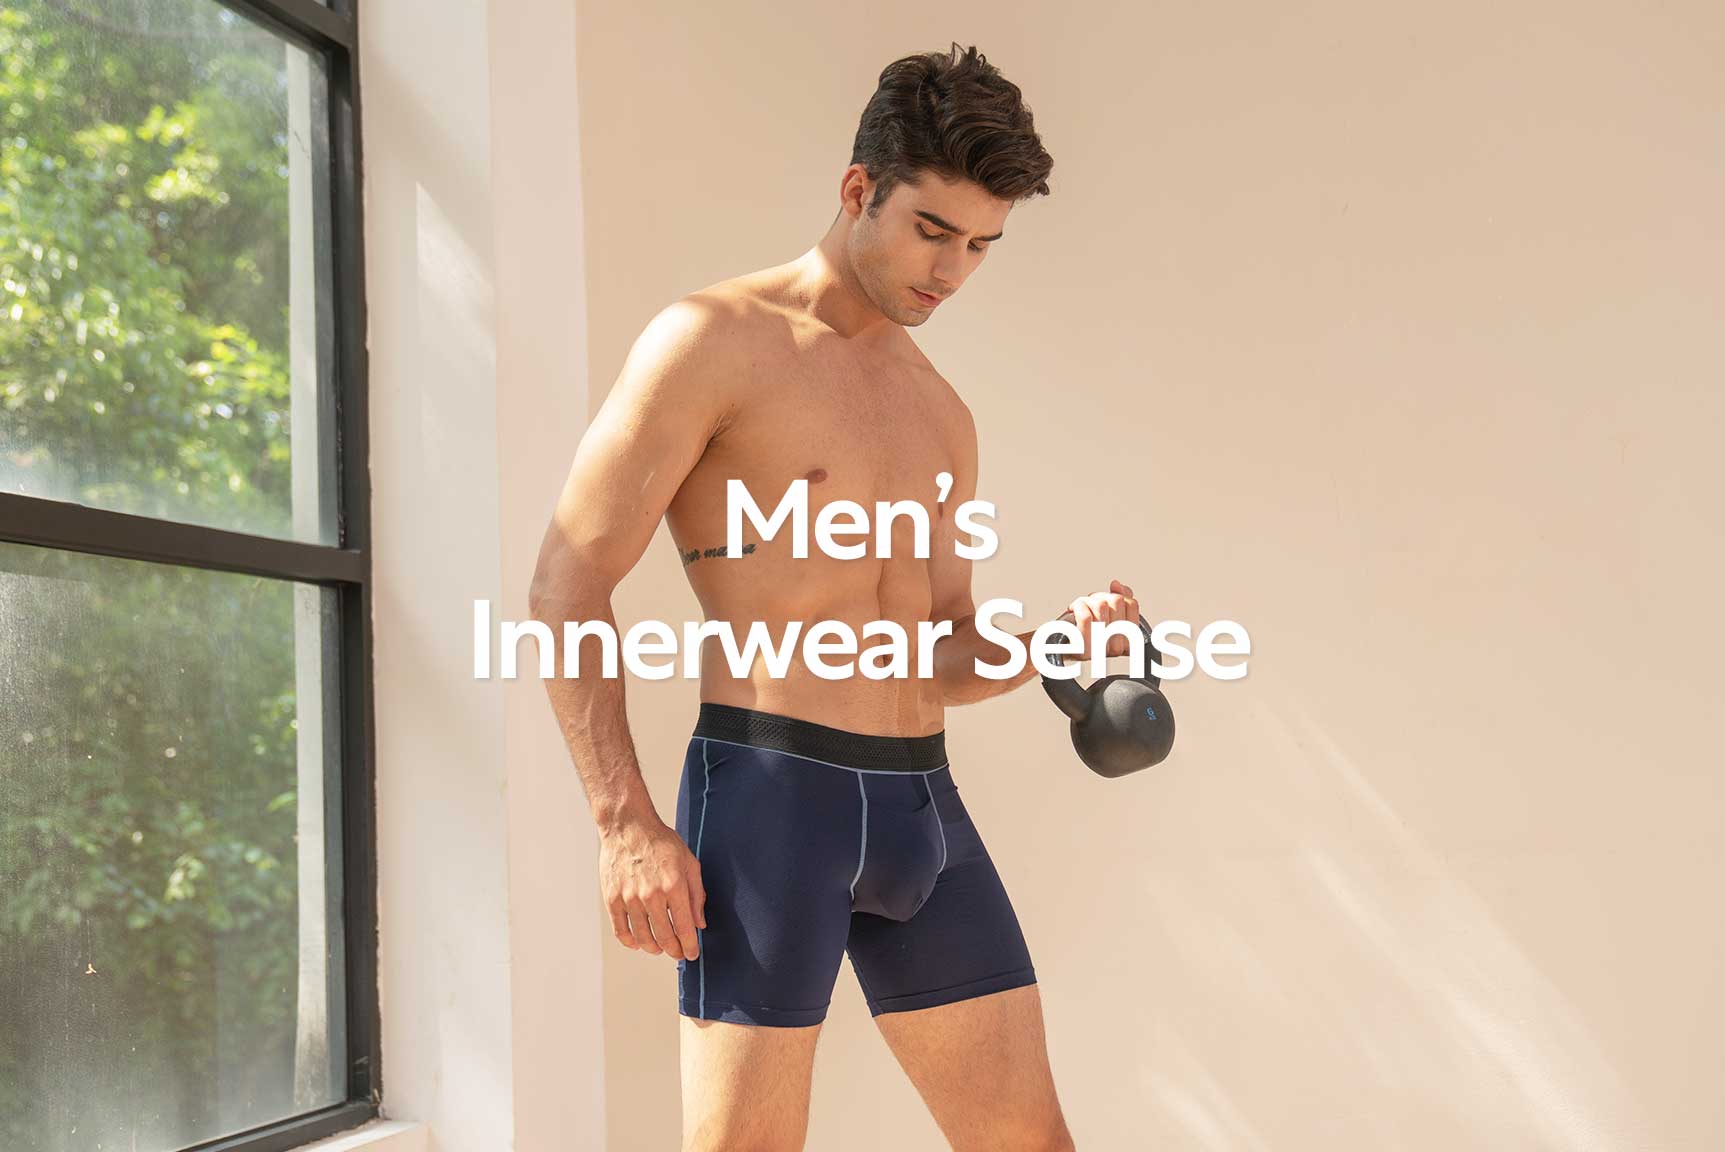 STEP ONE Mens Underwear Boxer Briefs - Underwear for Men, Moisture-Wicking,  3D Pouch + No Ride Up Boxer Briefs for Men, Mens Boxers Briefs at   Men's Clothing store